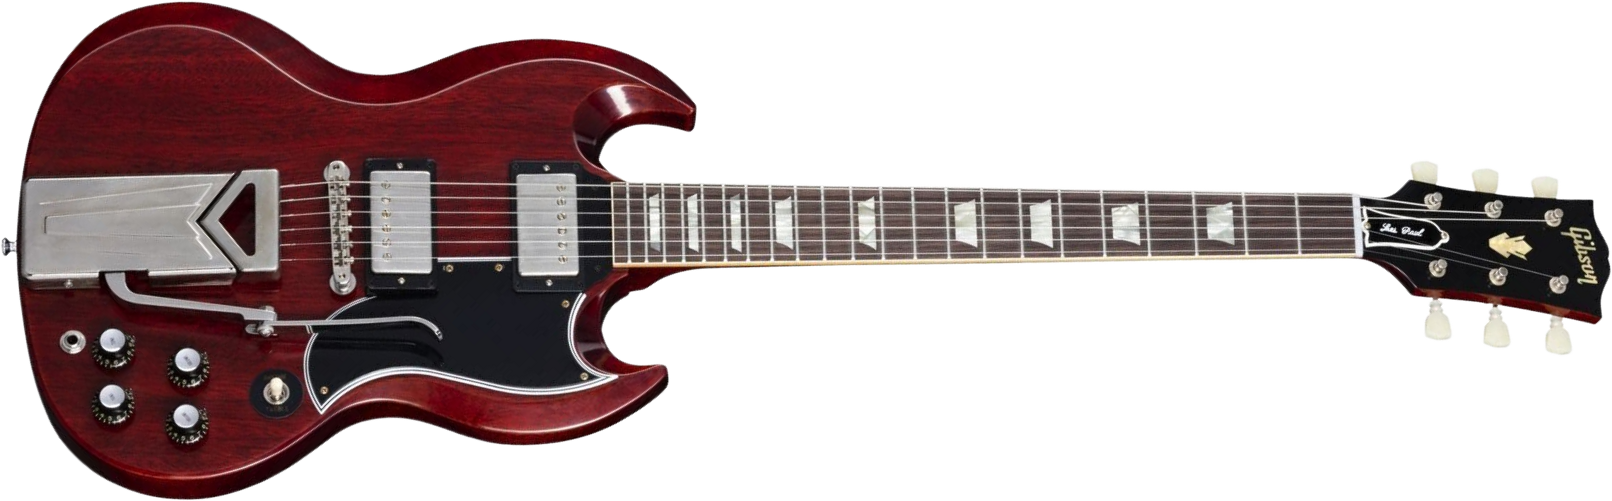 Gibson Sg Les Paul 1961 60th Ann. 2h Trem Rw - Vos Cherry Red - Guitarra eléctrica de doble corte. - Main picture